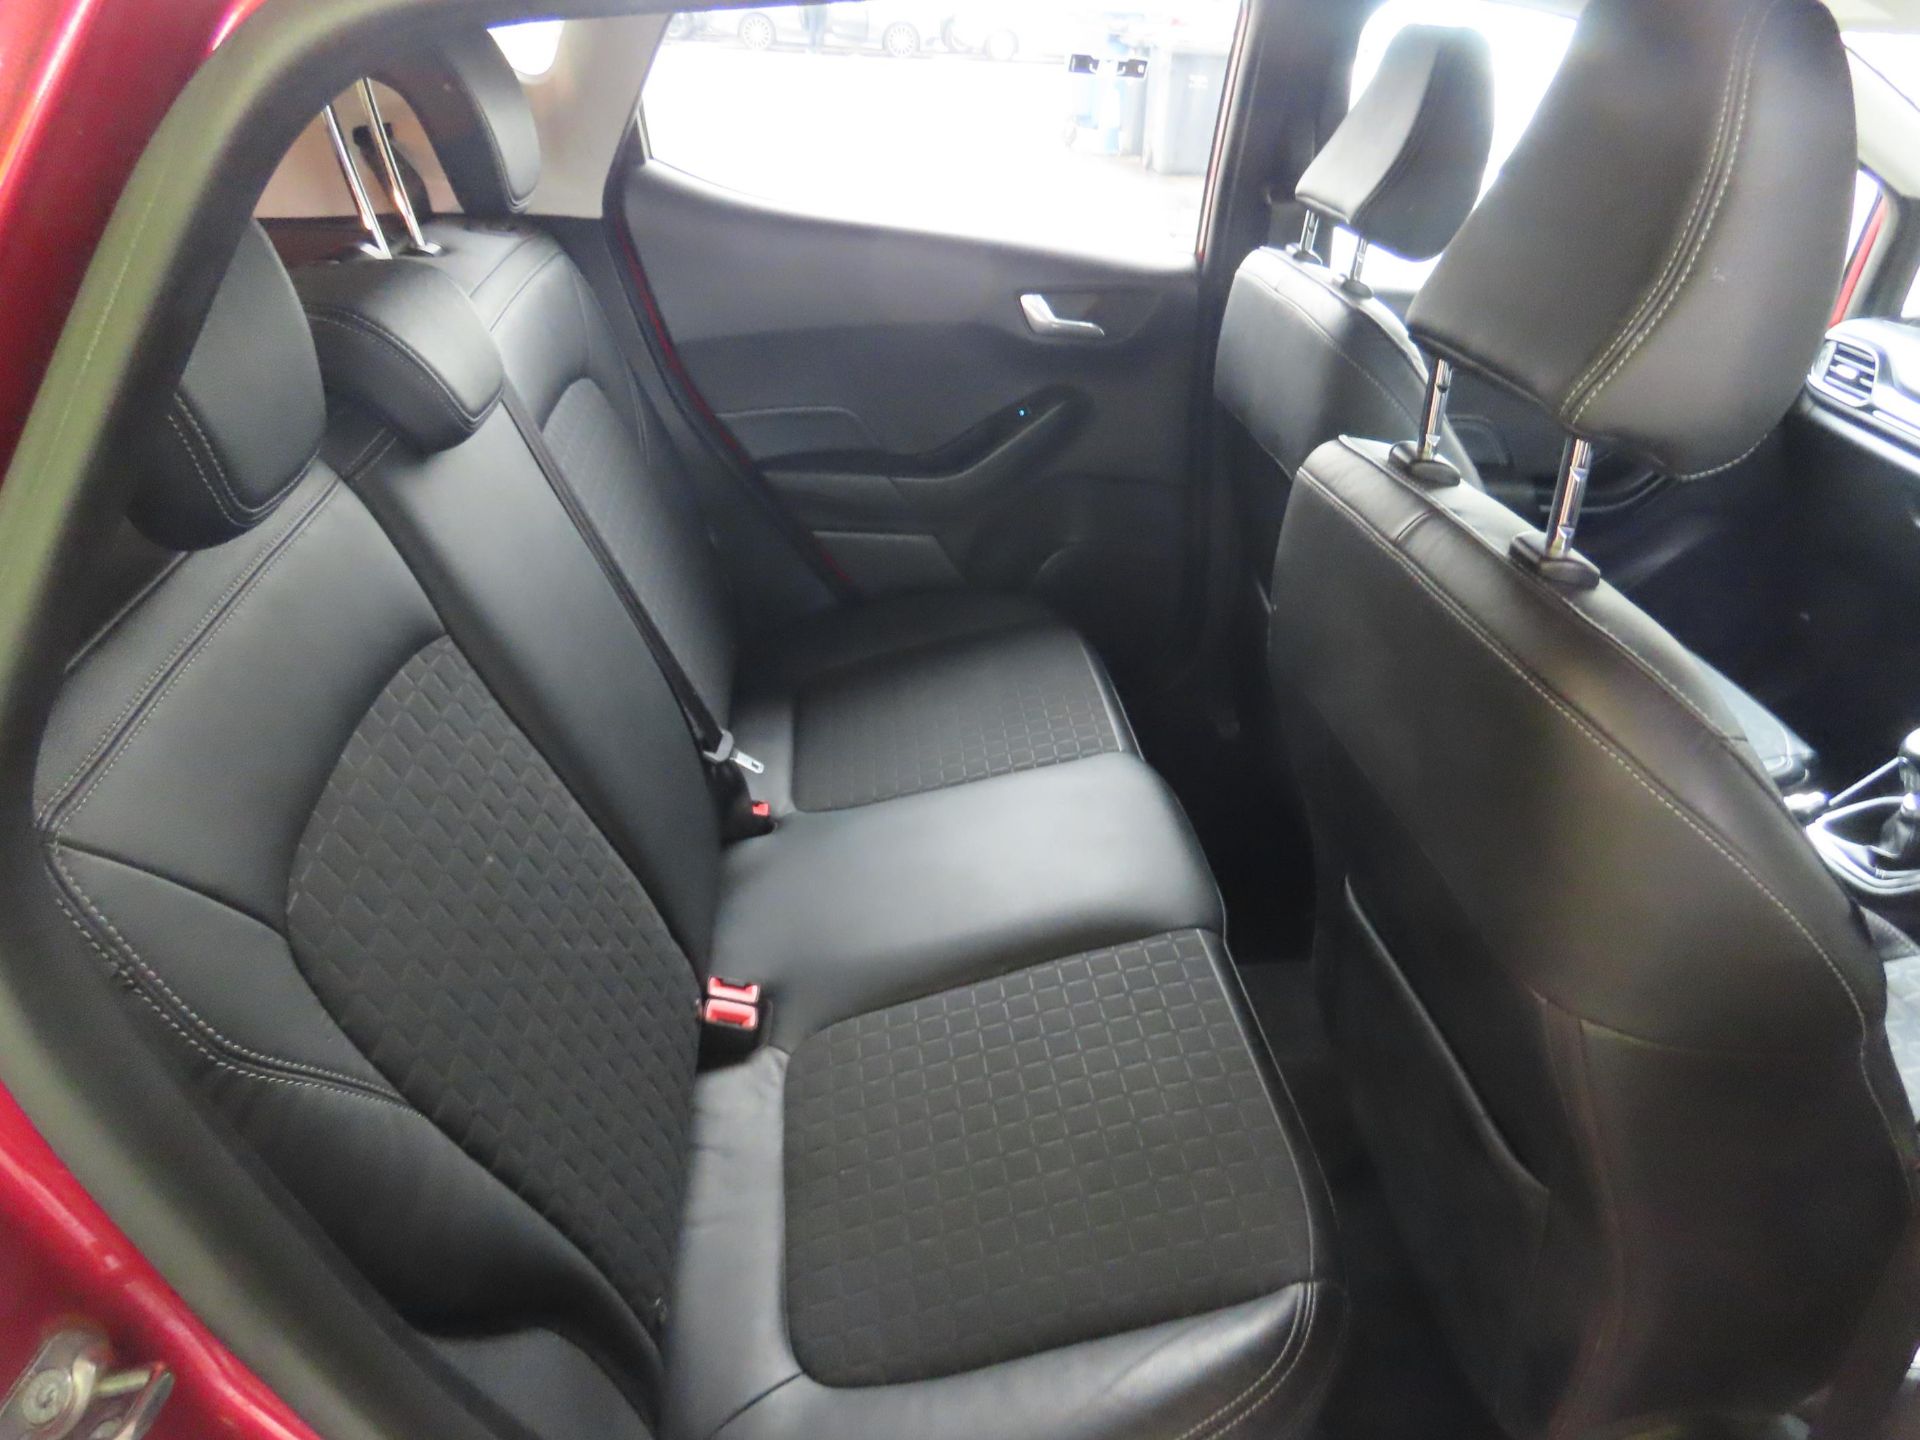 (RESERVE MET)Ford Fiesta "Titanium X" 1.5 TDCI (5 Door) 2019 Model - FSH - Red - Air Con - Sat Nav - Image 9 of 11